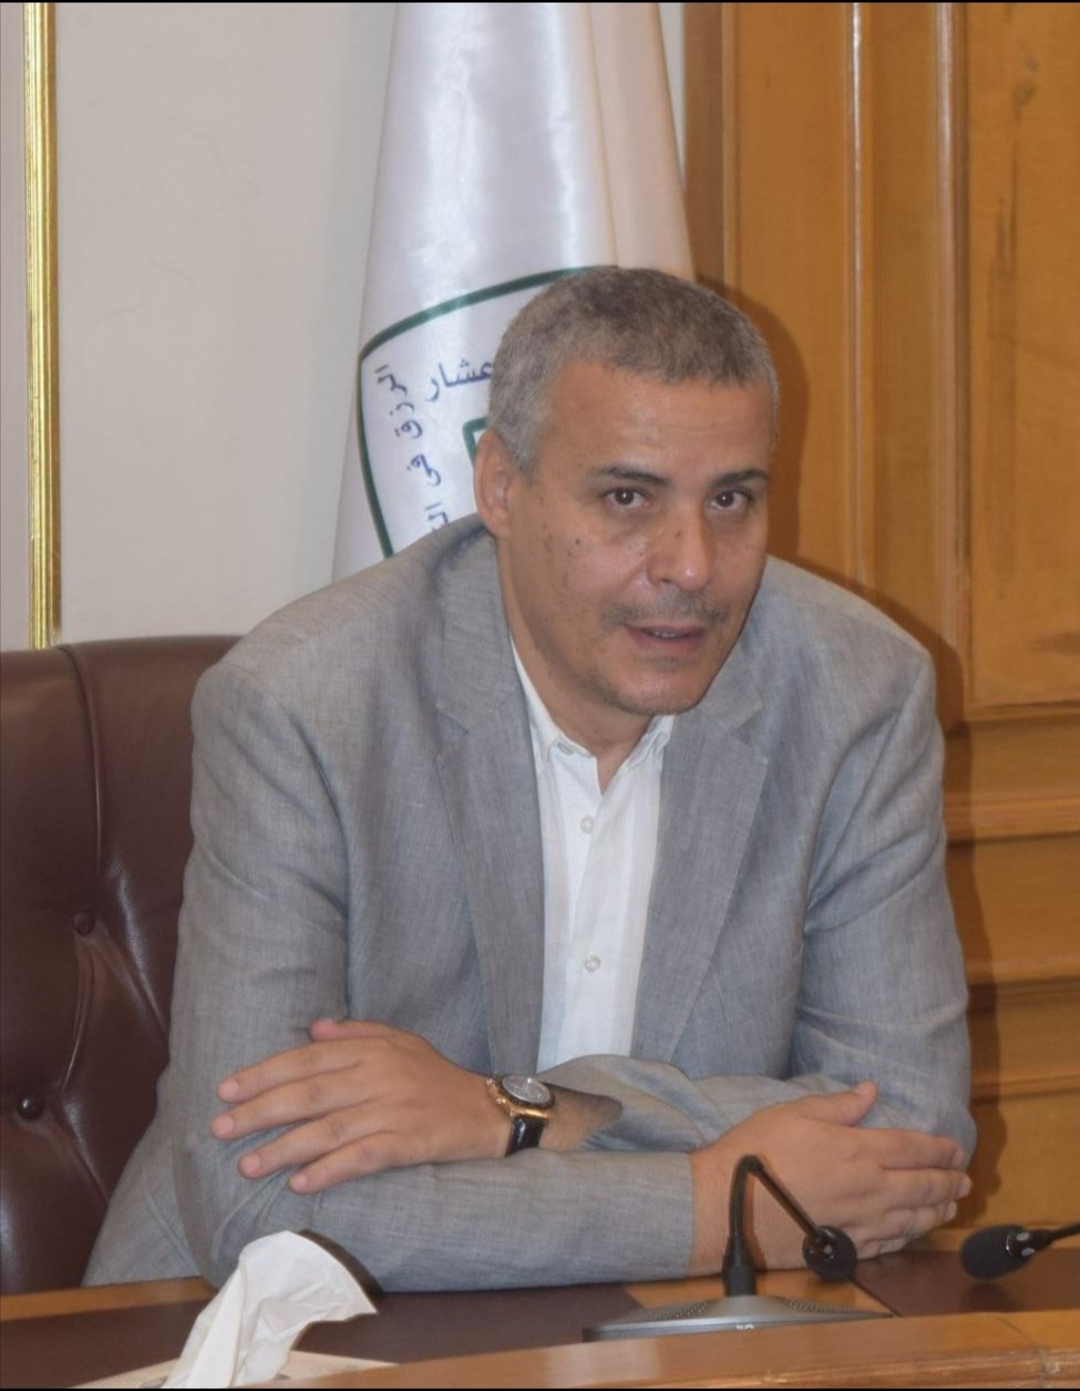 عماد قناوي رئيس شعبة المستوردين علي رأس قائمة المعينين بمجلس إدارة غرفة القاهرة التجارية